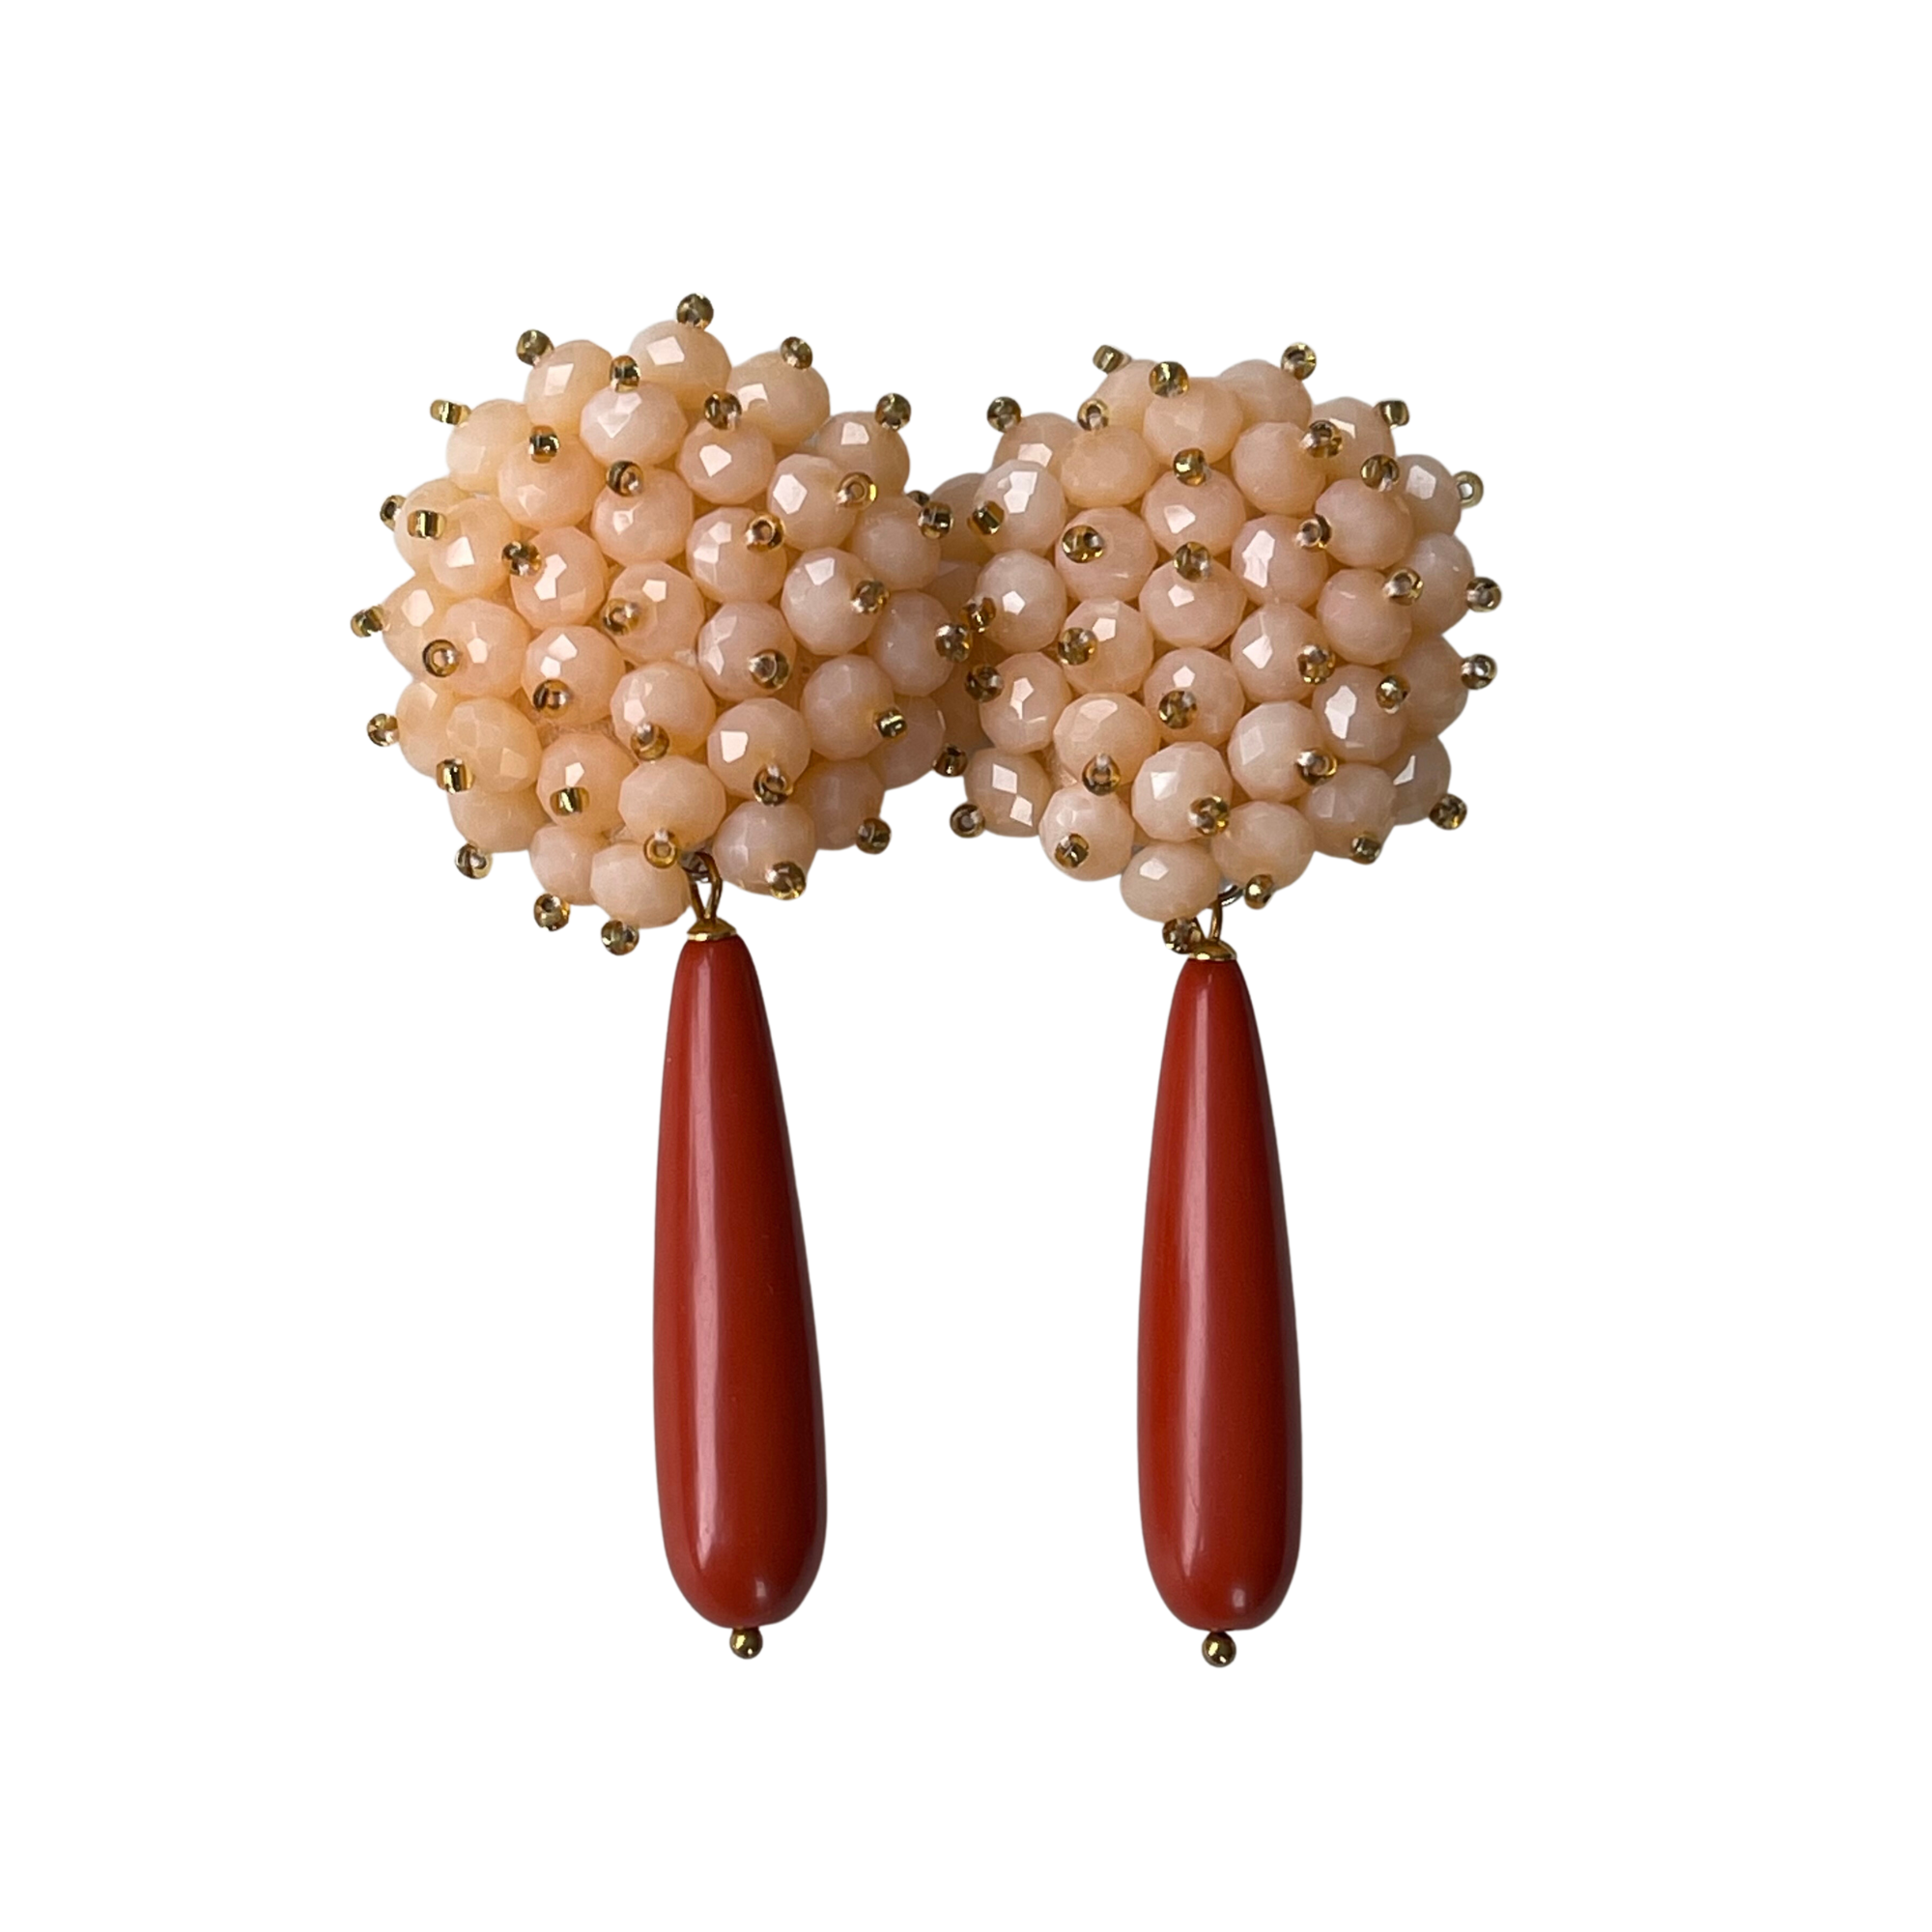 Ohrhänger mit Pfirsichfarbenen Kristallen und Korallen - Praktischer Clip-Verschluss - Länge: 8,0 cm, Breite: 3,6 cm - 18 K vergoldetes Messing mit funkelnden Kristallen und faszinierenden Korallen